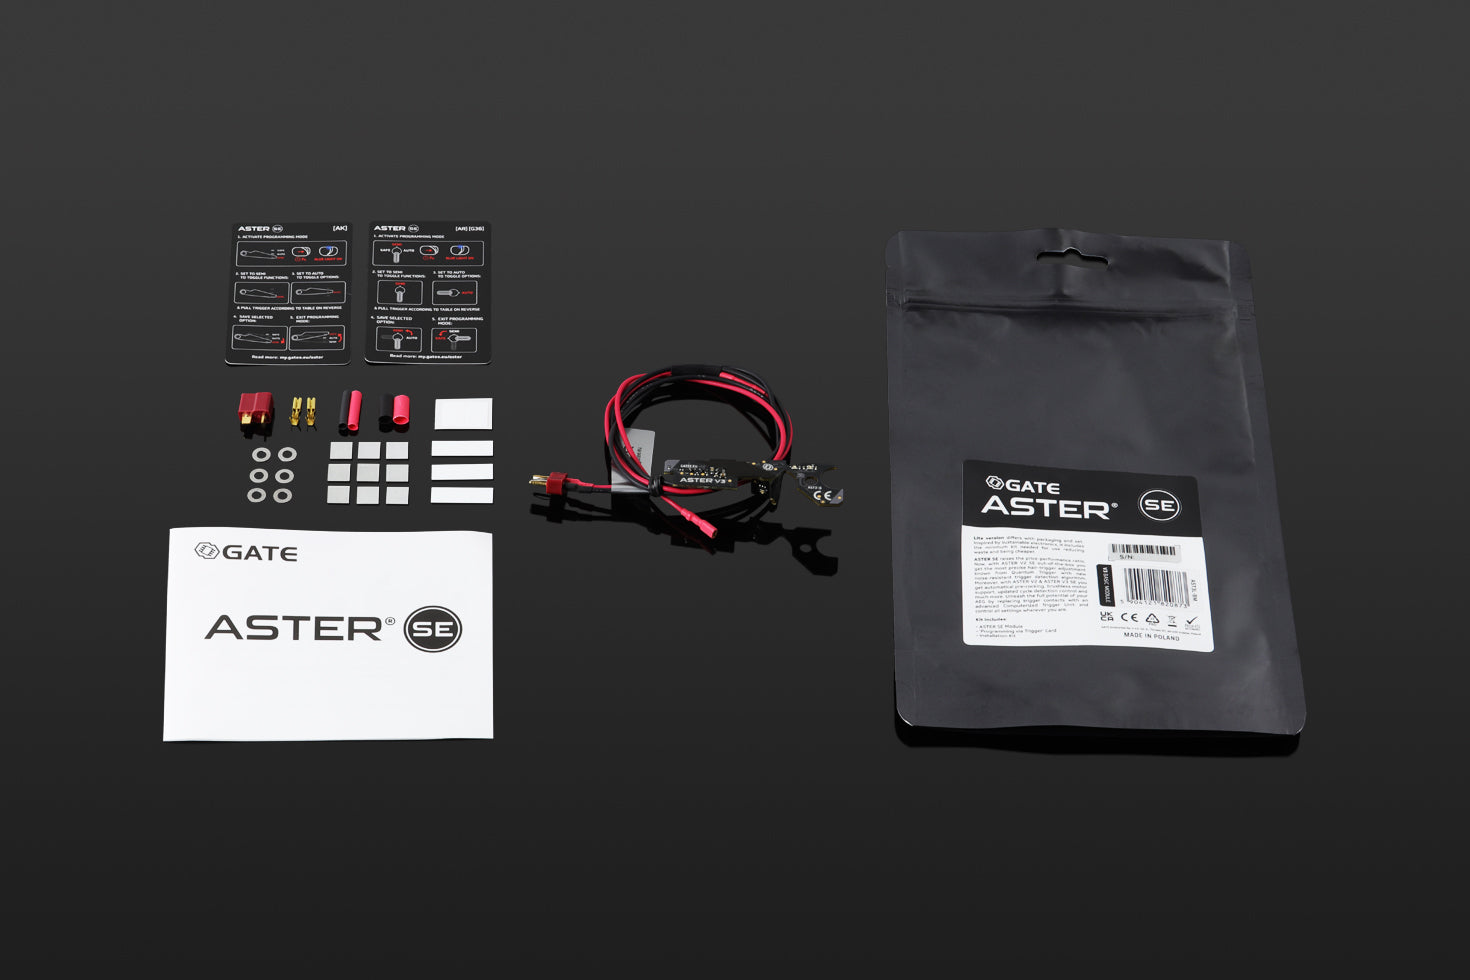 ASTER SE EXPERT for V3 GB – GATE Enterprise USD